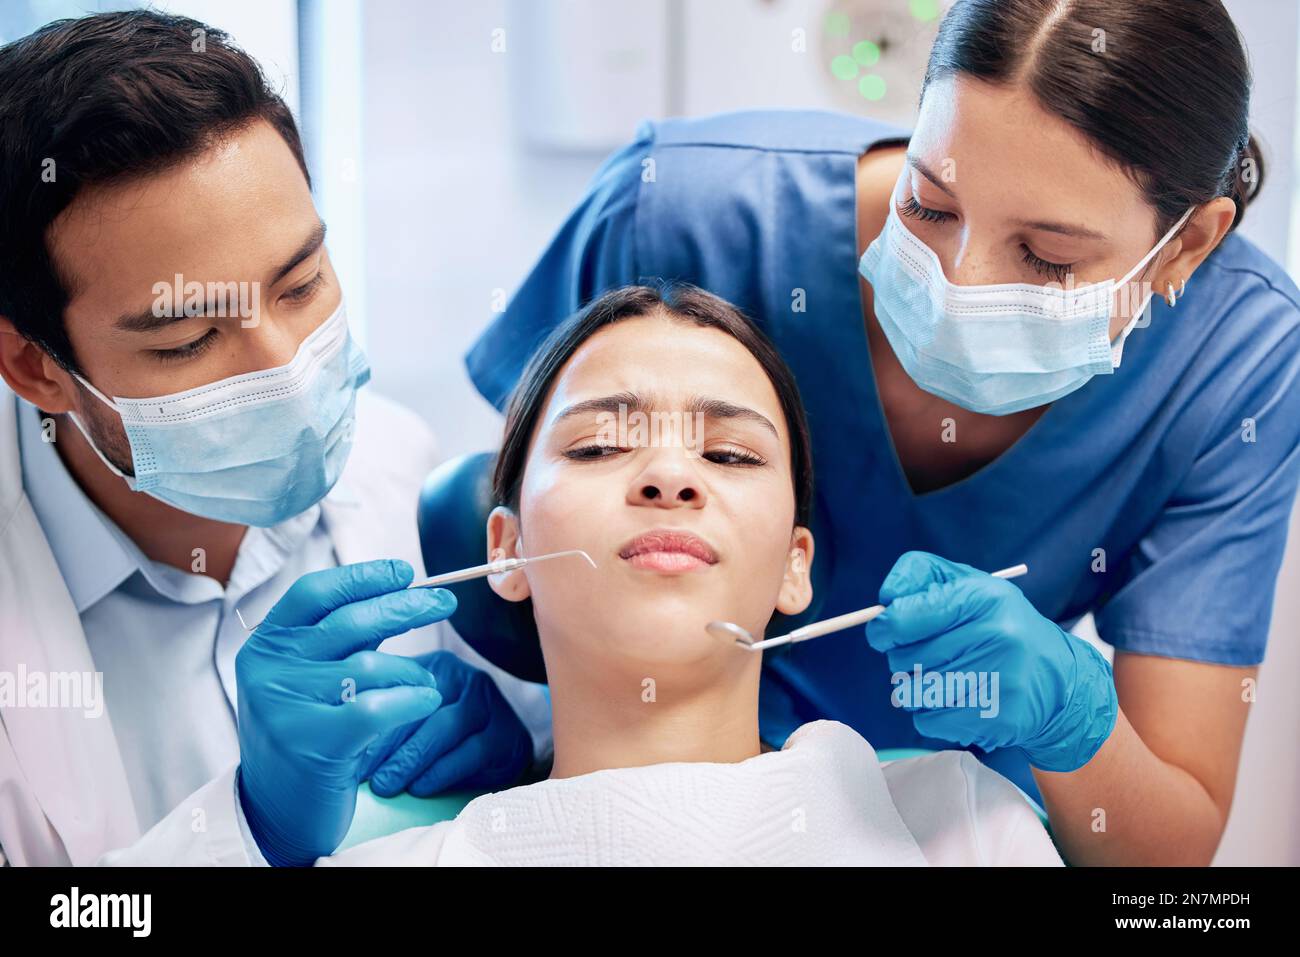 Zu viele Dinge in der Nähe ihres Mundes. Eine junge Frau, die in ihrer Zahnarztpraxis unsicher aussieht. Stockfoto